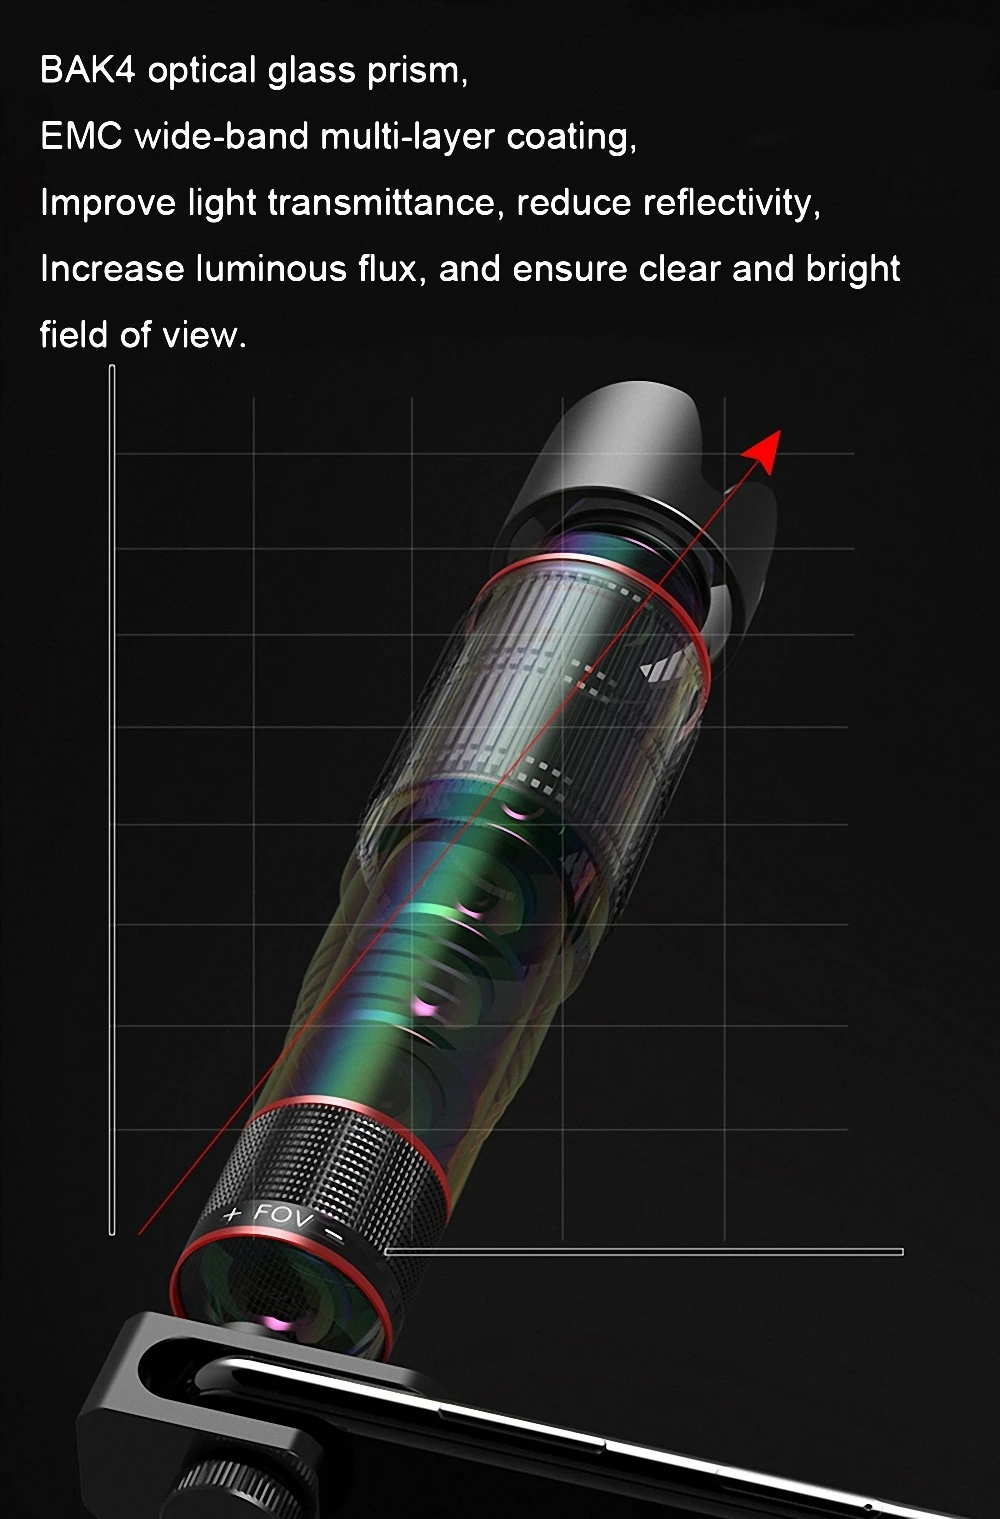 Универсальный 4K 36x зум телескопический объектив для мобильного телефона телефото внешний смартфон объектив камеры для IPhone Sumsung huawei все телефоны